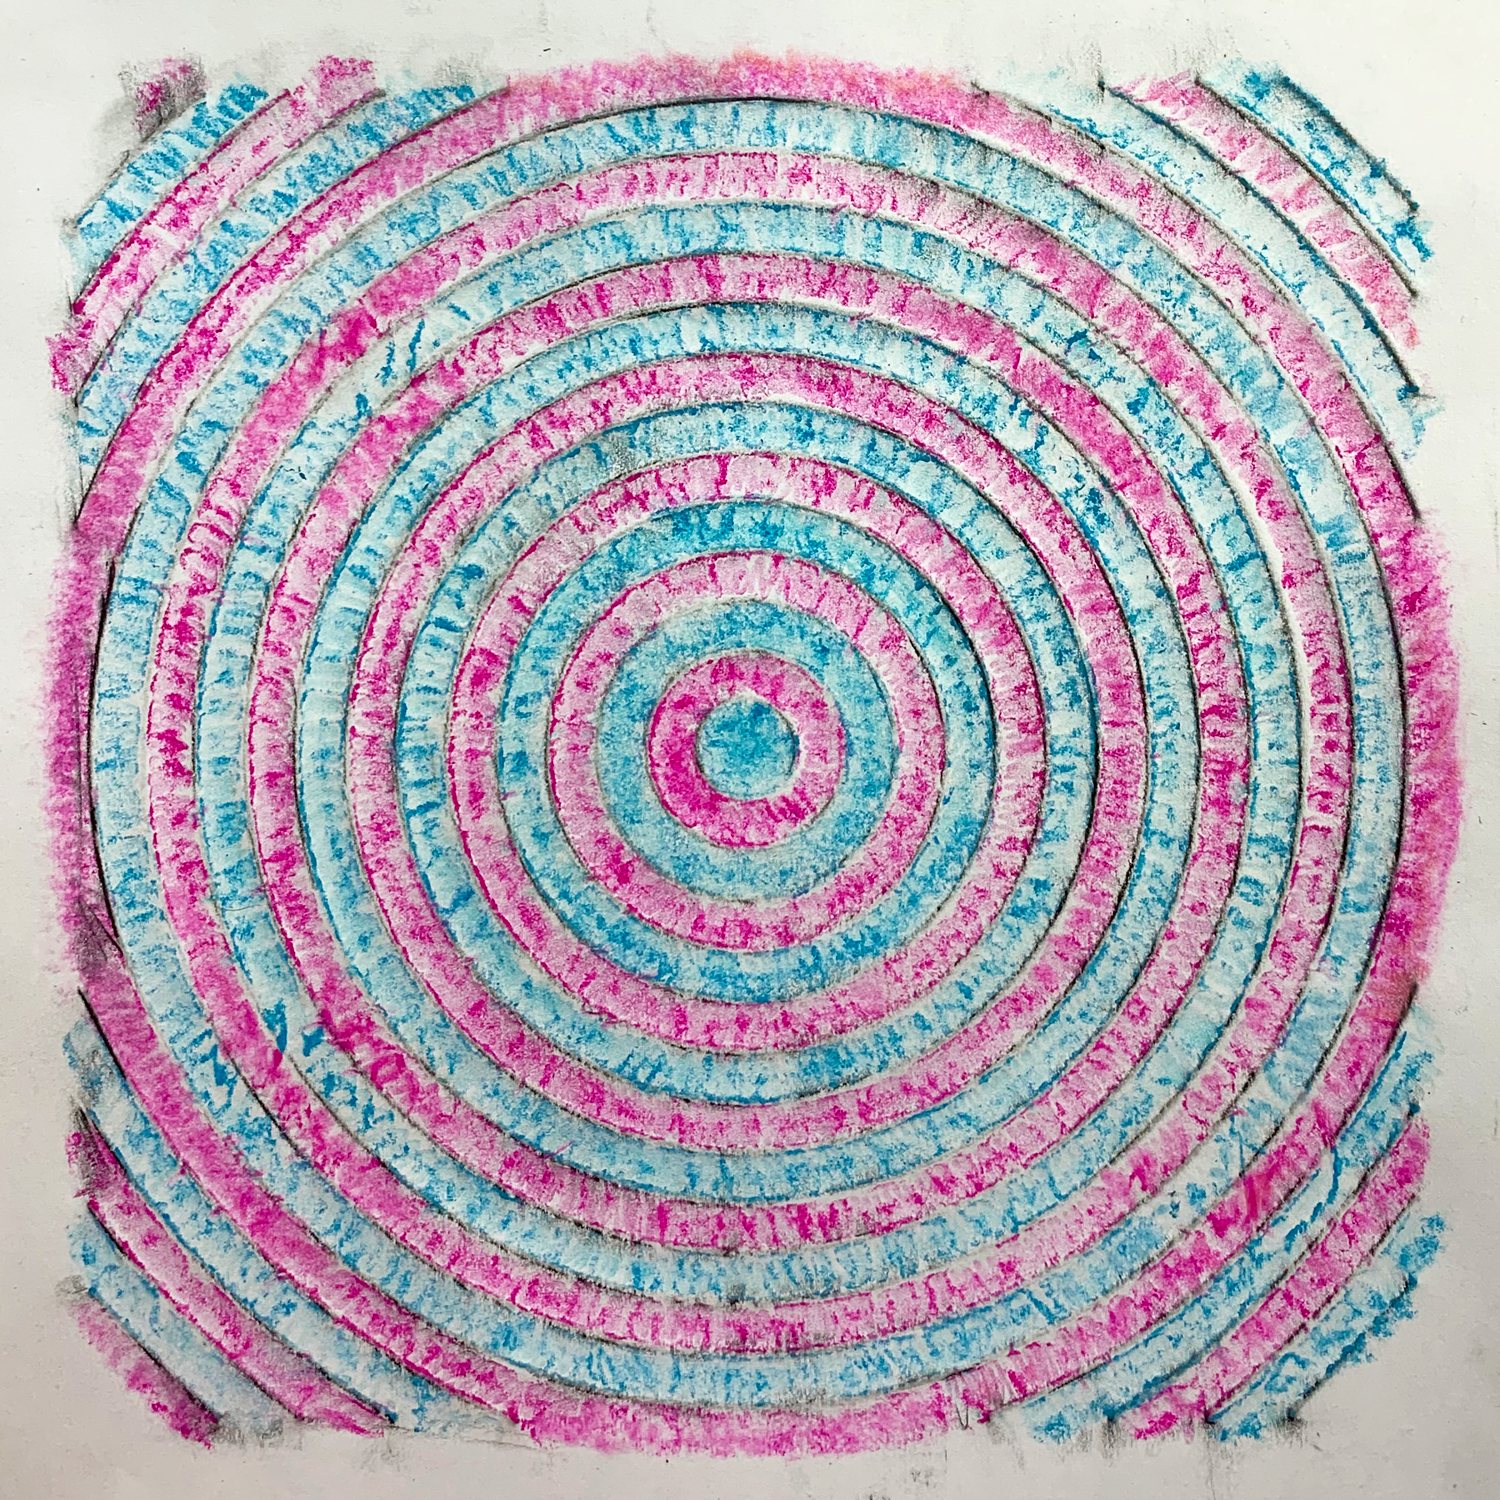 https://roylco.com/wp-content/uploads/2017/06/2101-Big-Box-of-Art-Materials-5841-Craft-Pink-Blue-Circles-1500px.jpg